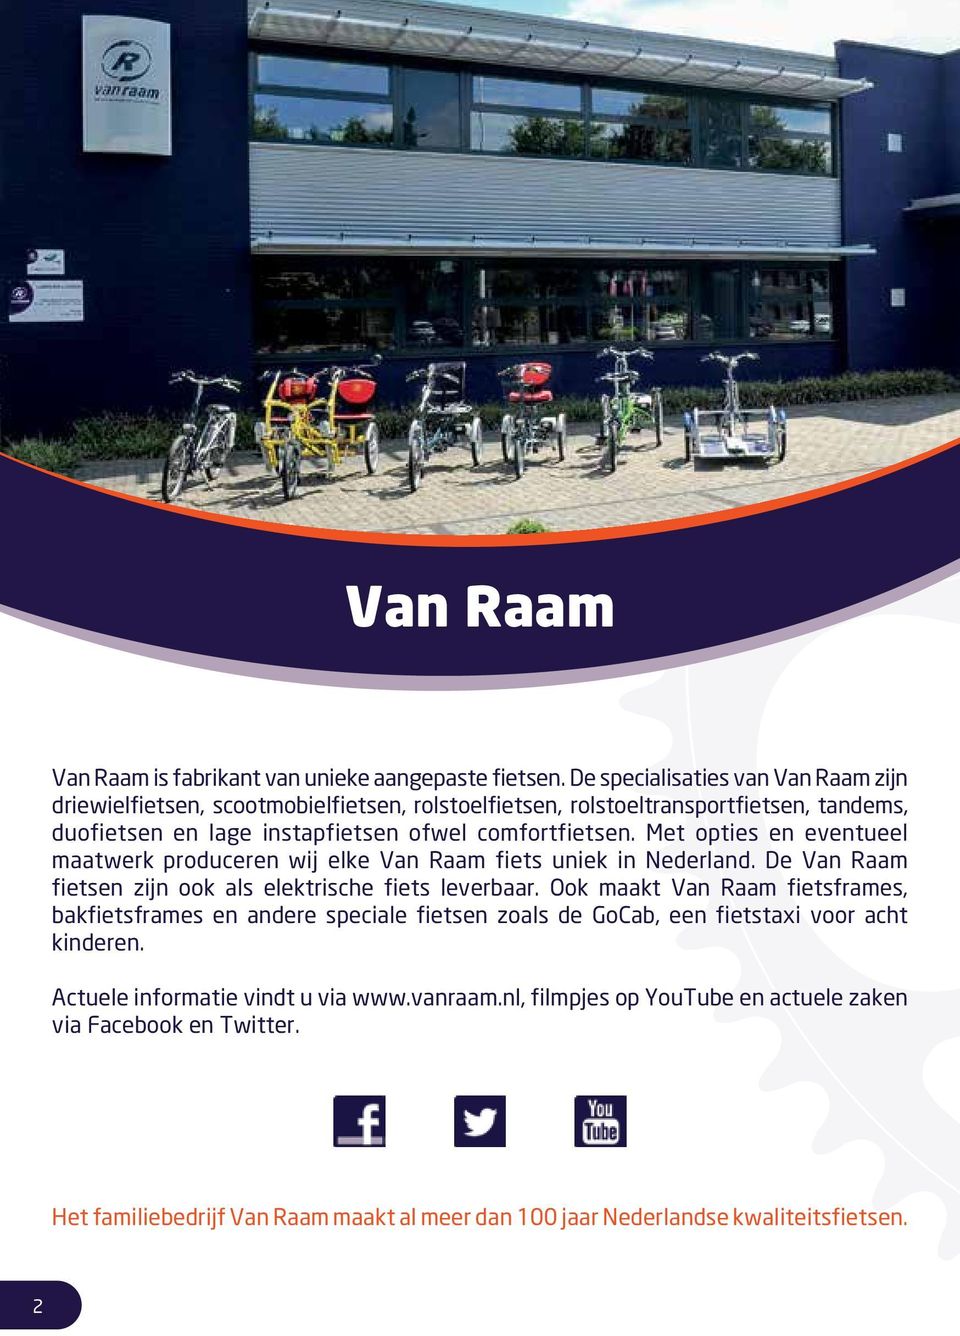 comfortfietsen. Met opties en eventueel maatwerk produceren wij elke Van Raam fiets uniek in Nederland. De Van Raam fietsen zijn ook als elektrische fiets leverbaar.